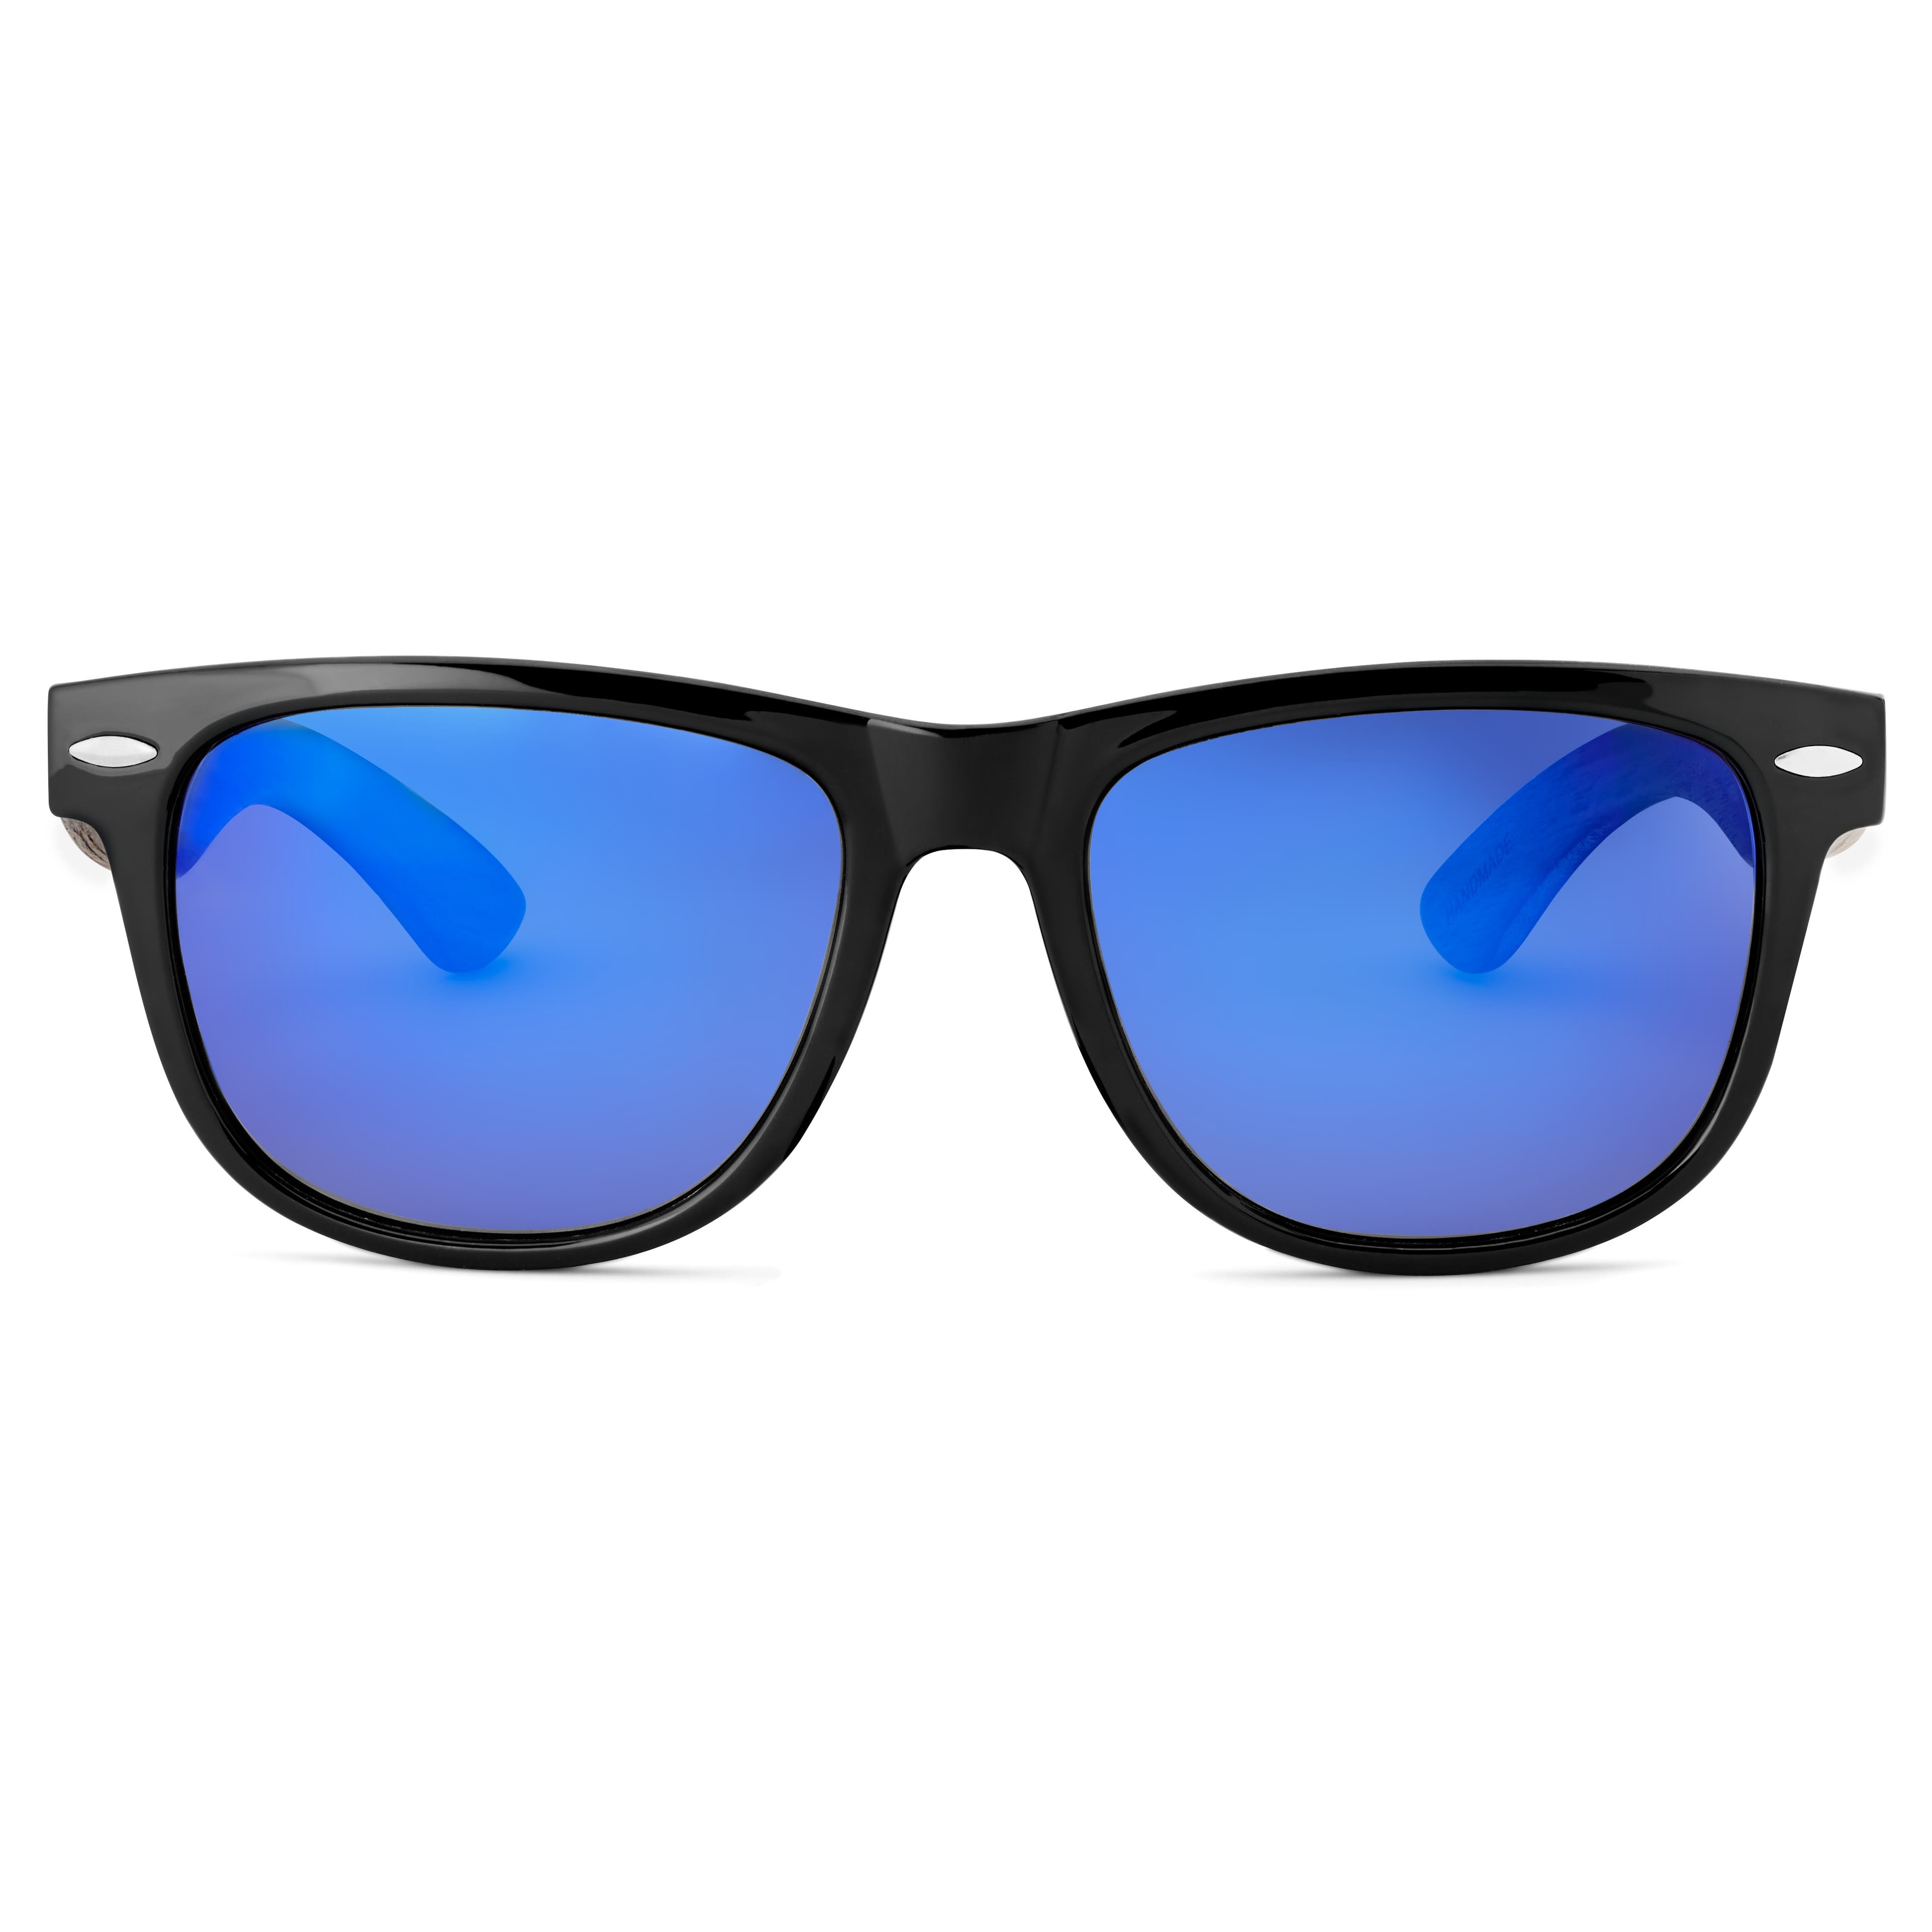 Sort & Blå Retro Polariserede Solbriller med Brillestænger i Træ